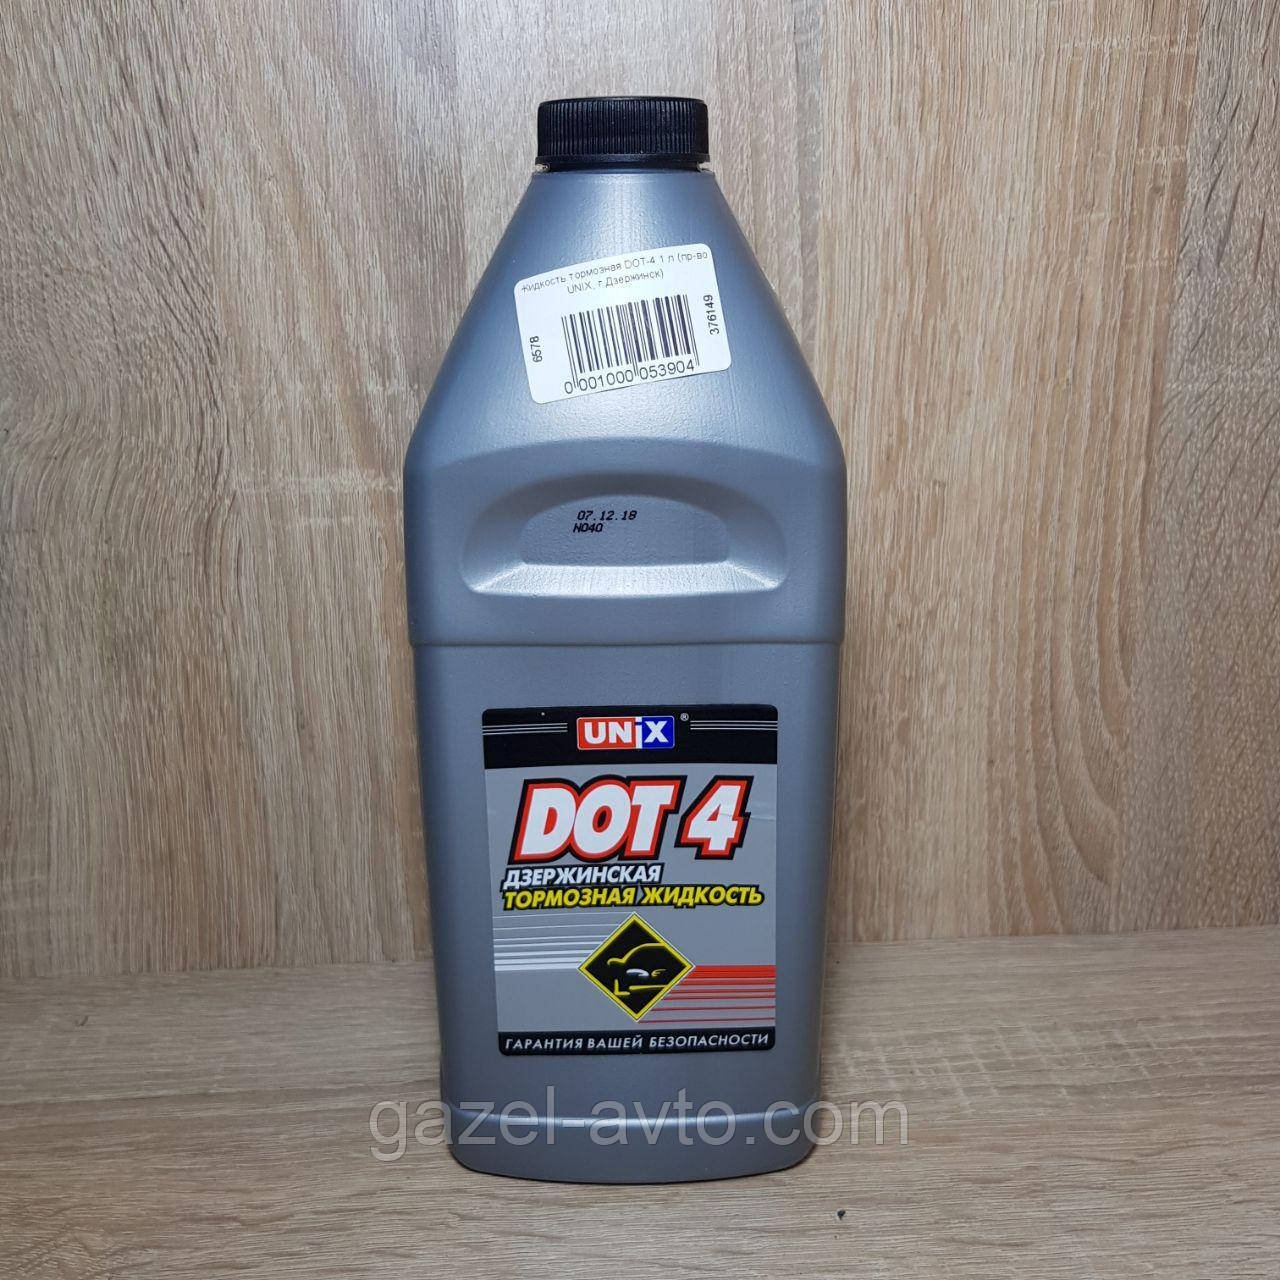 Жидкость тормозная DOT-4 1 л (пр-во UNIX, г.Дзержинск)